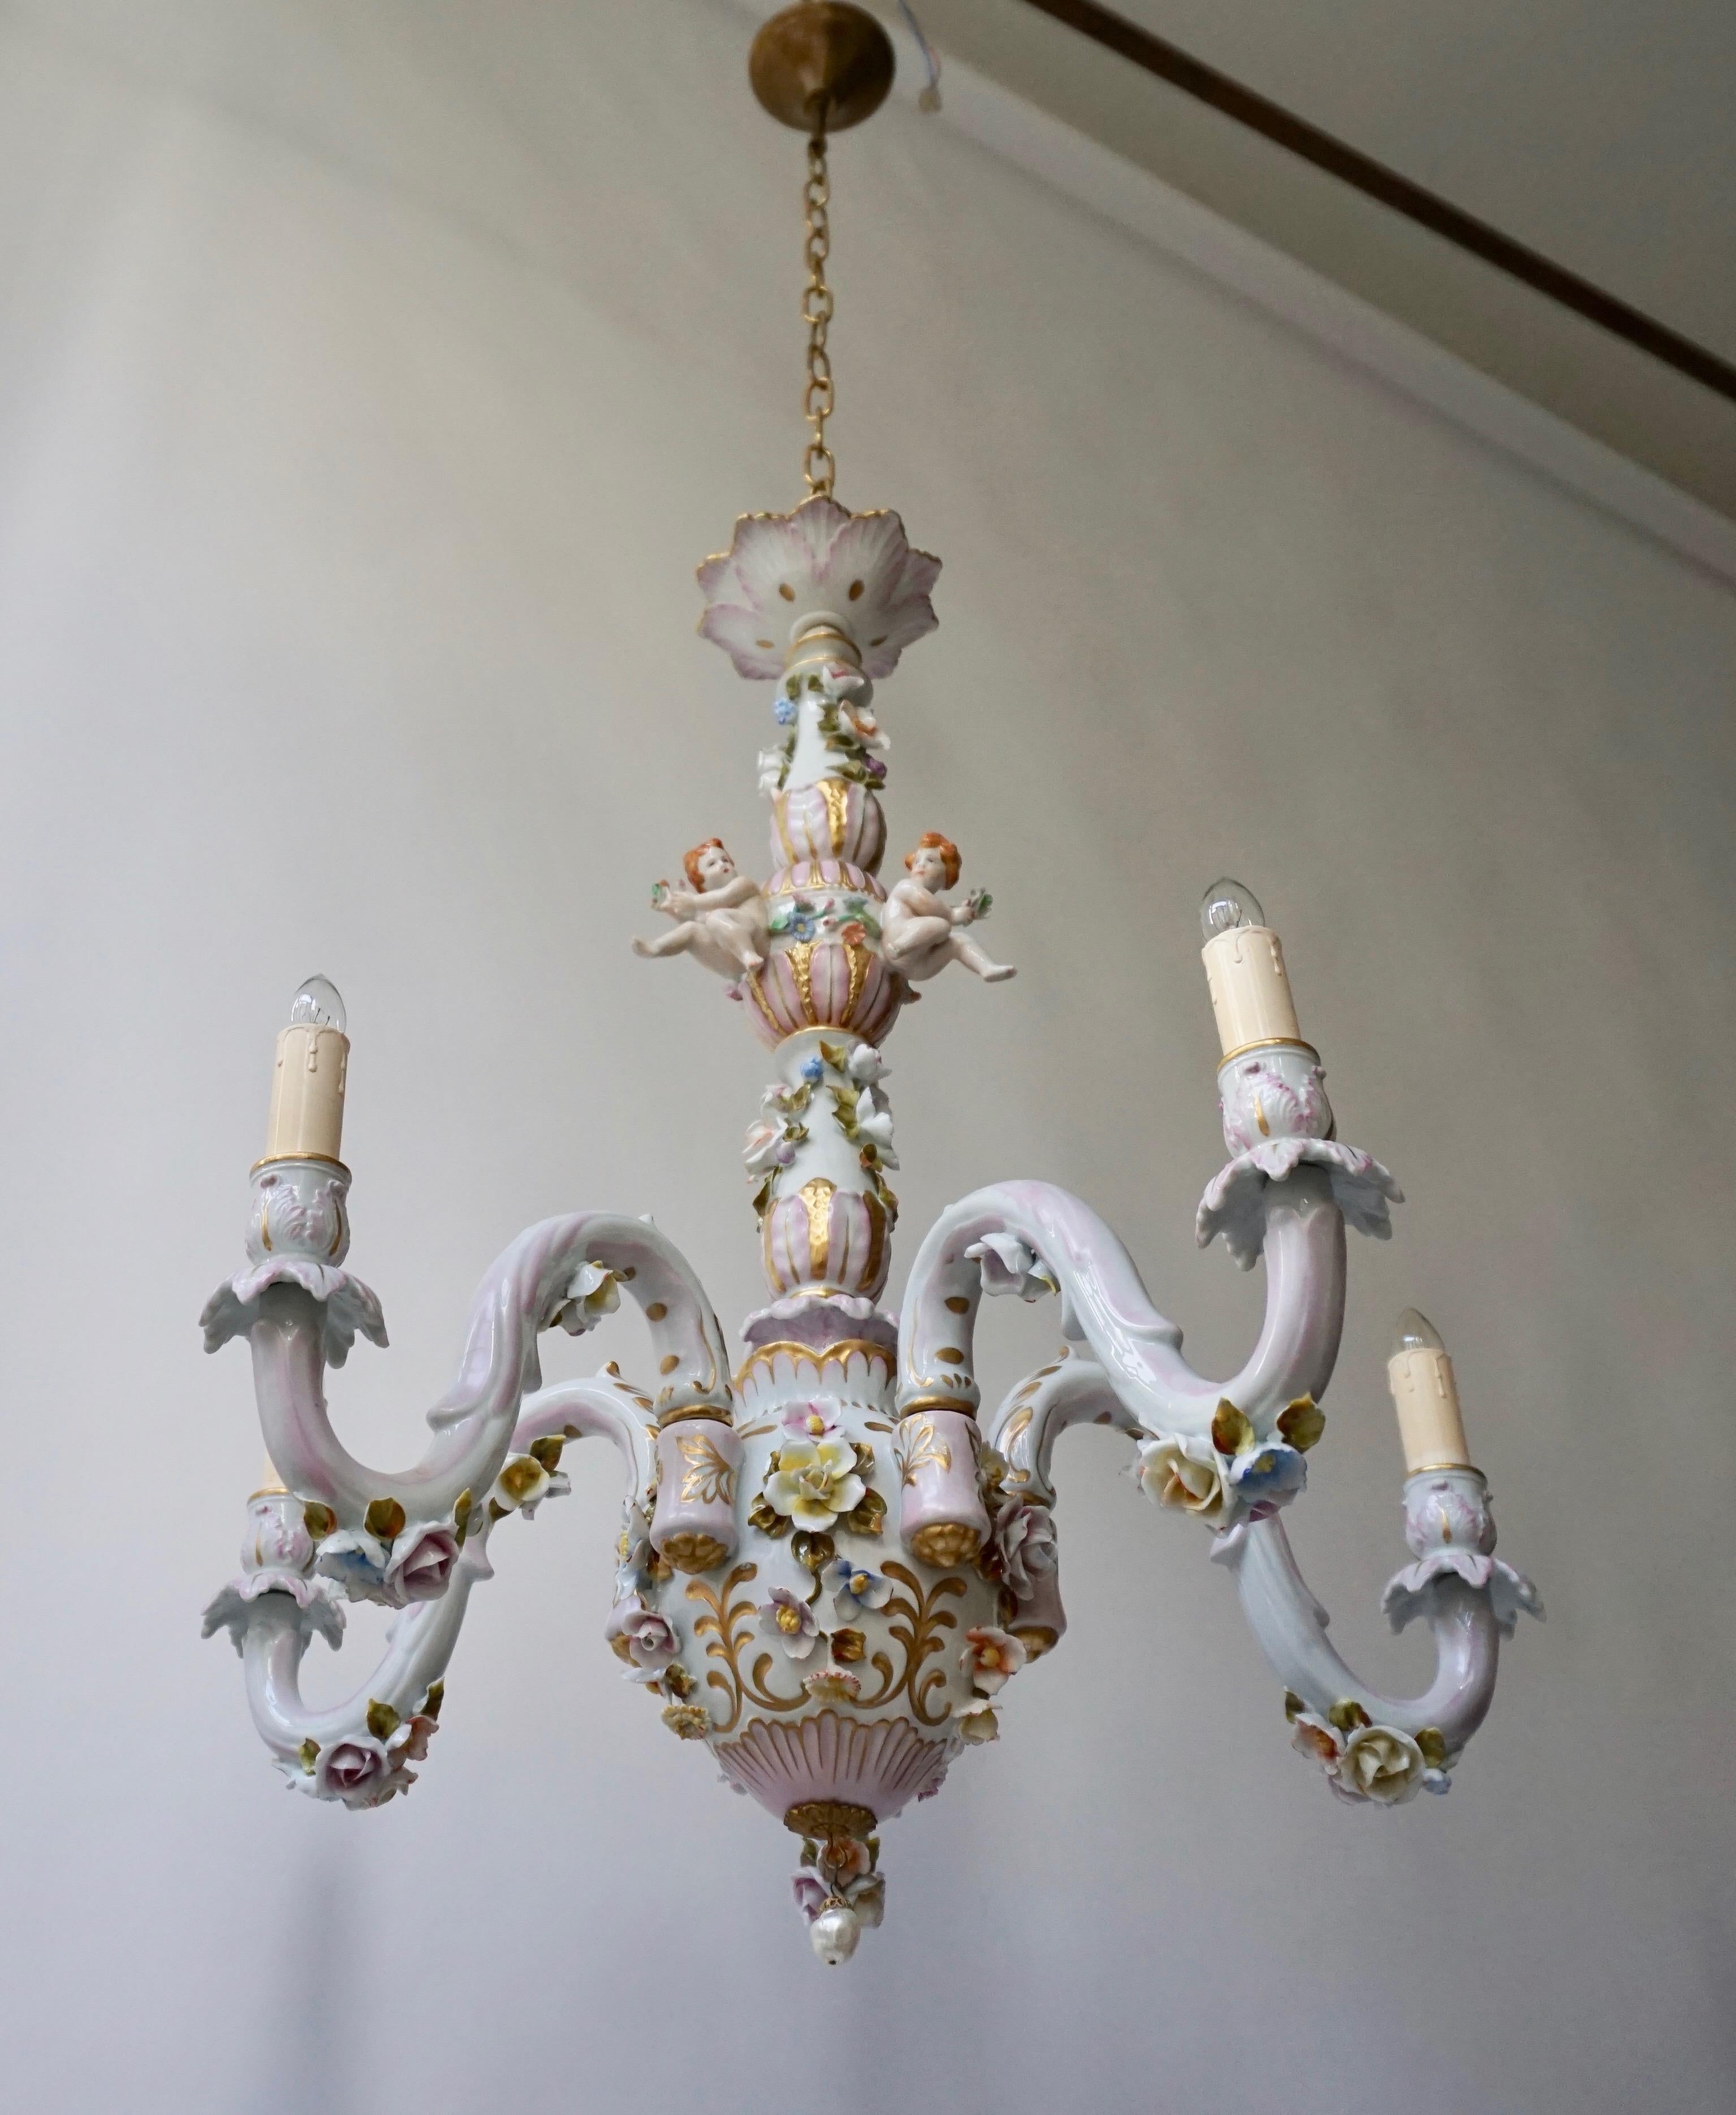 capodimonte chandeliers